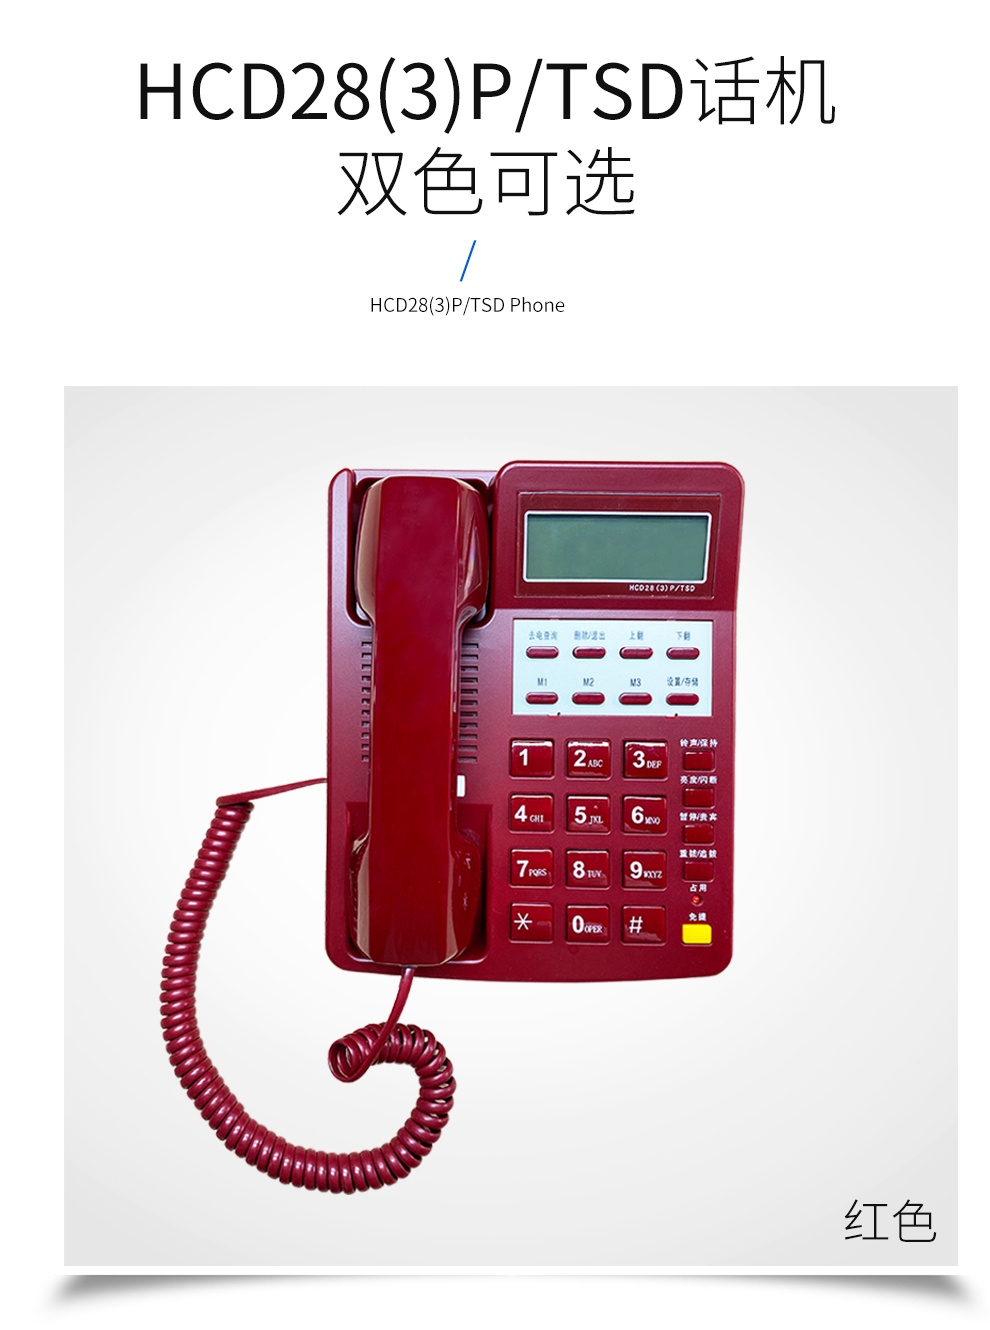 恒捷HCD28(3)P/TSD型 电话机白/红保密红白话机 政务话机 军政保密话机 话音传输质量好 可靠性高 防雷击示例图1